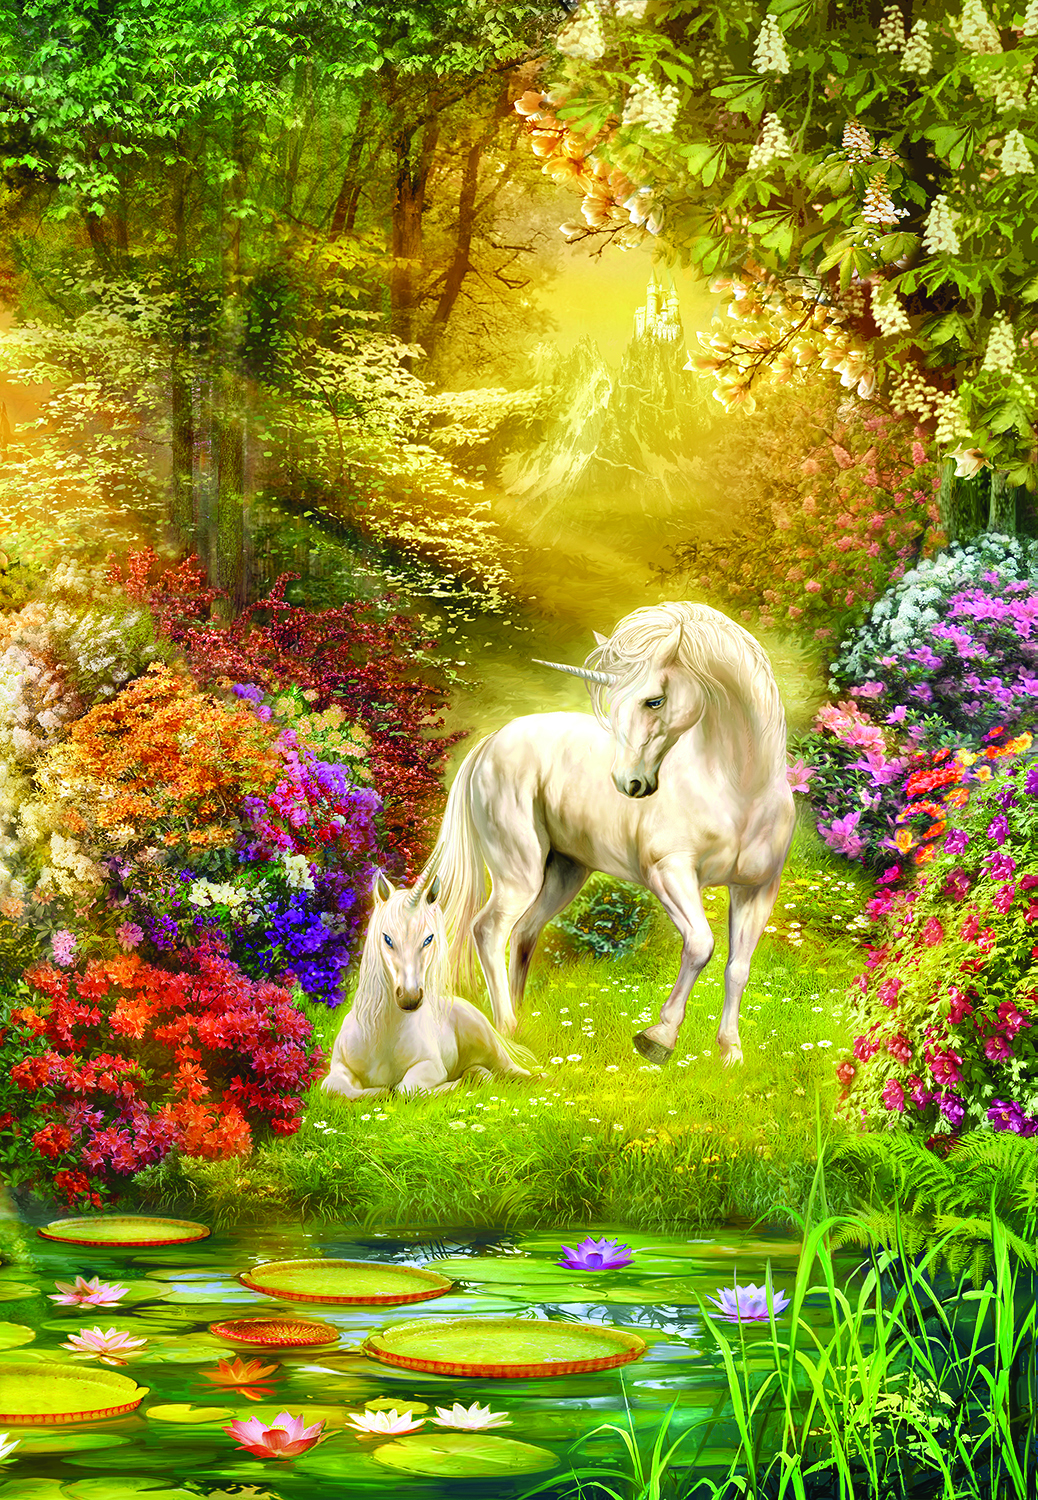 SO-24415 - Enchanted Garden Unicorns